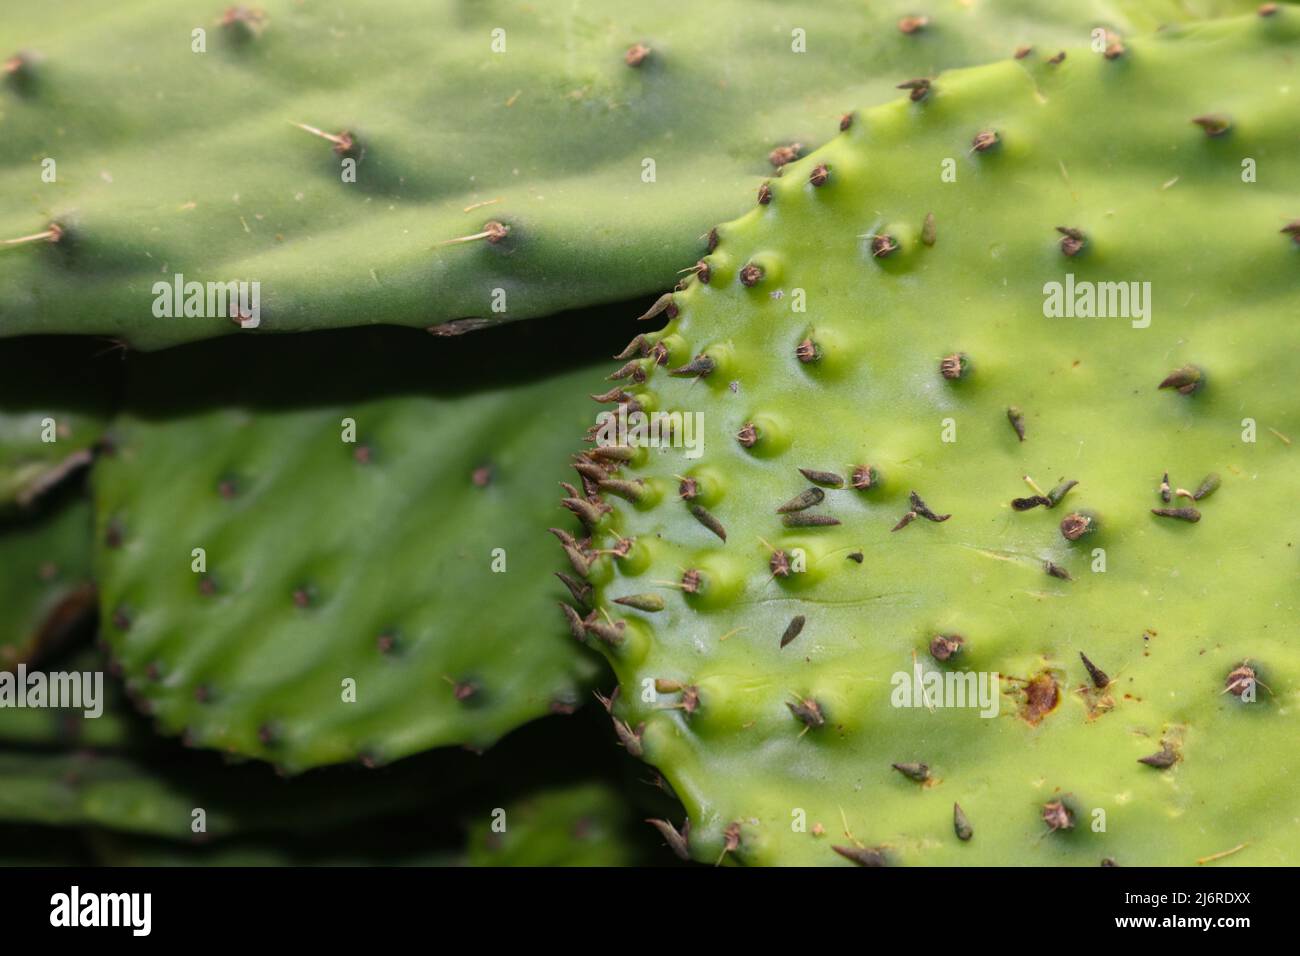 Closeup di Nopal con espinas o il cactus di Opuntia o Prickly pera un indgredient comune nei piatti e nella medicina di cucina del Mexicn Foto Stock